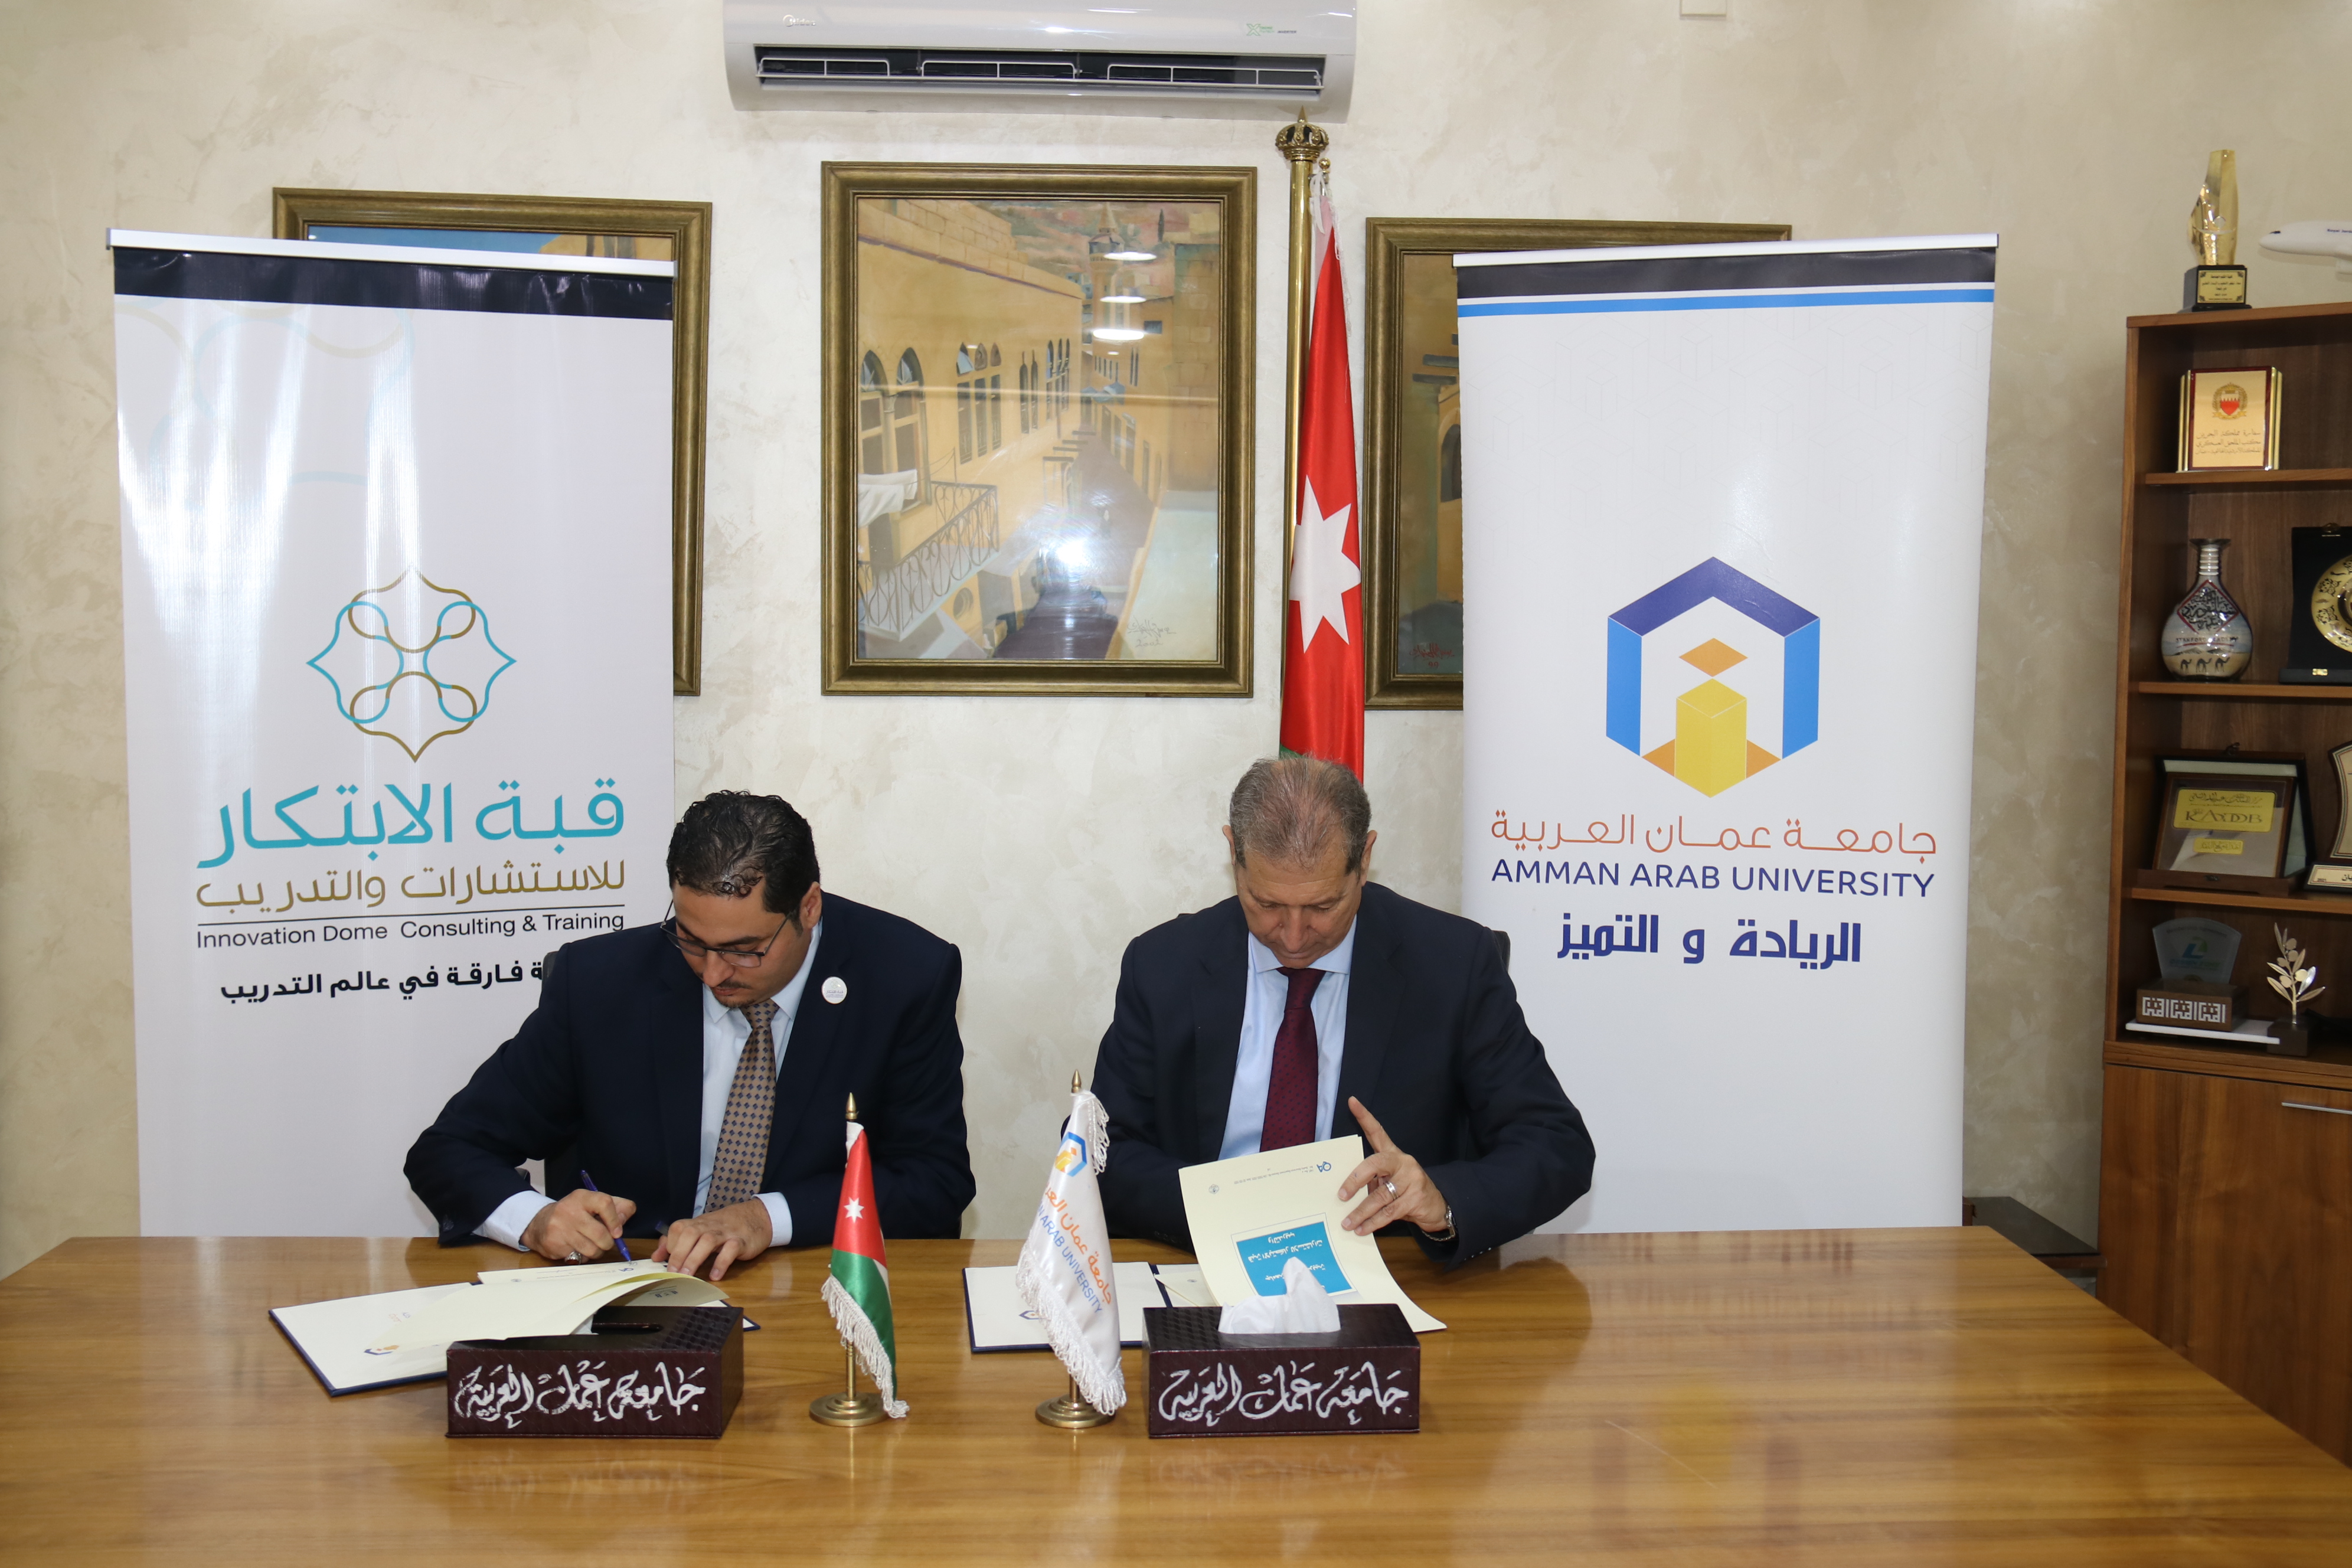 اتفاقية تعاون مشترك بين "عمان العربية" وقبـّة الابتكار للاستشارات والتدريب2